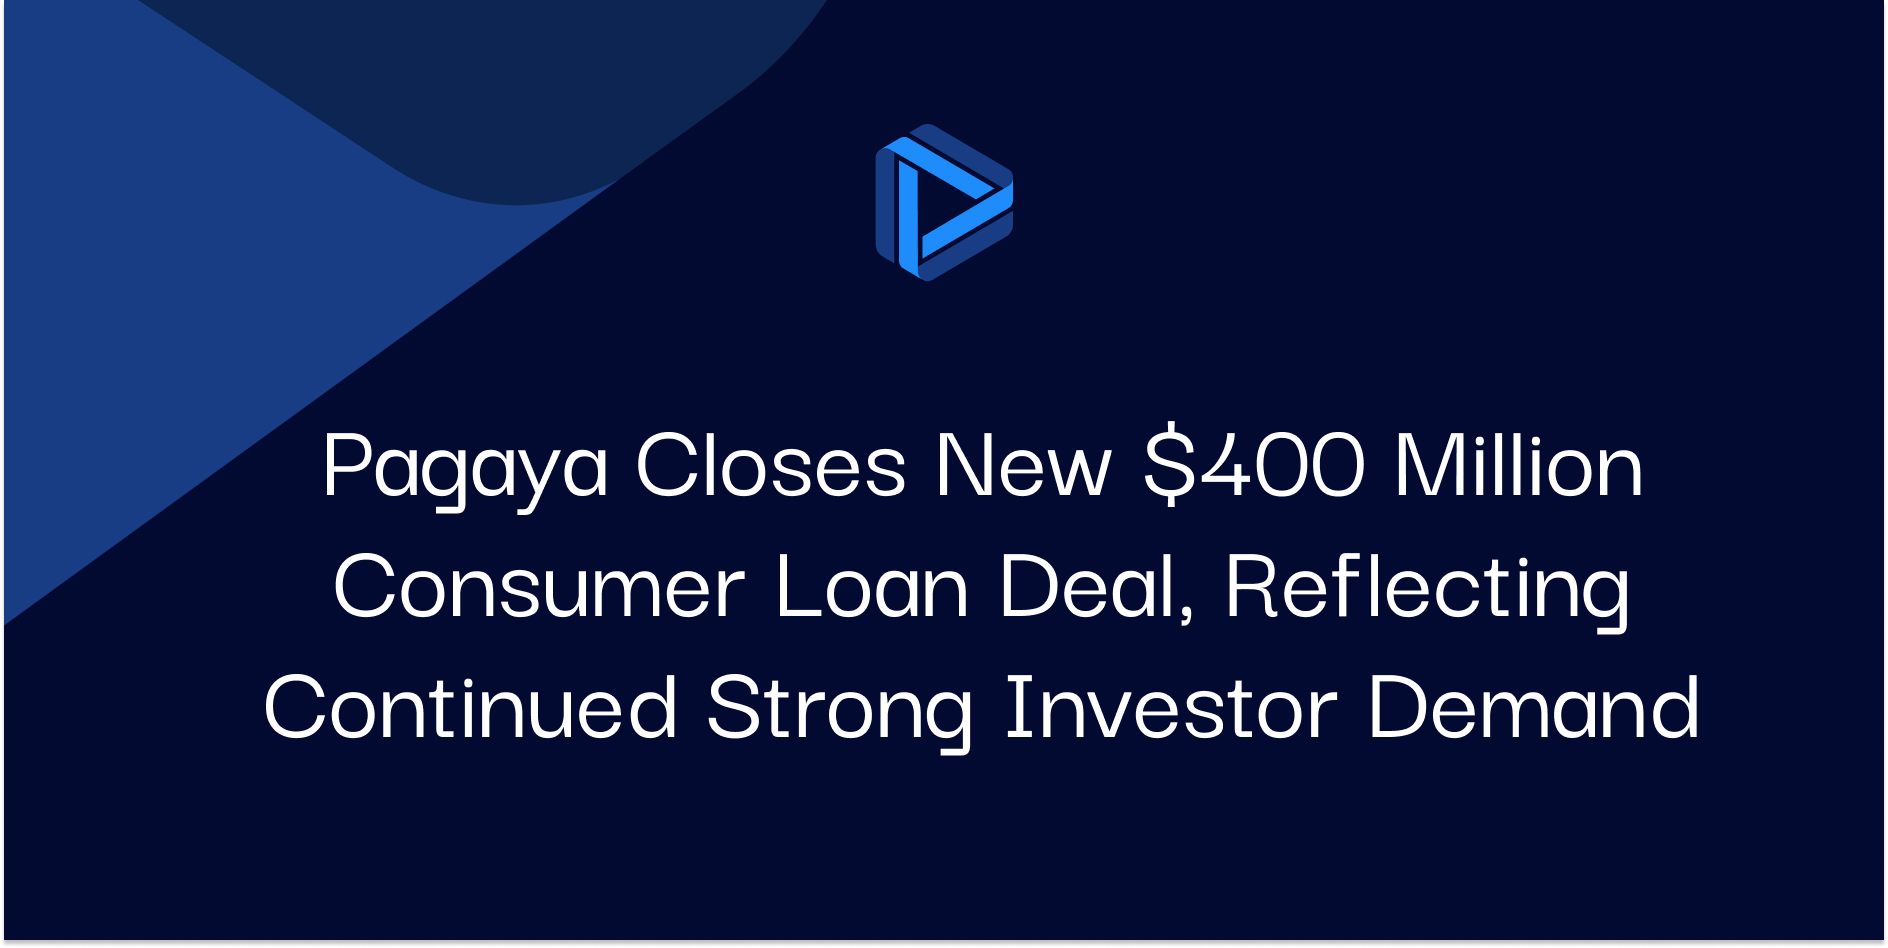 Pagaya Closes New $400 Million Consumer Loan Deal, Reflecting Continued Strong Investor Demand